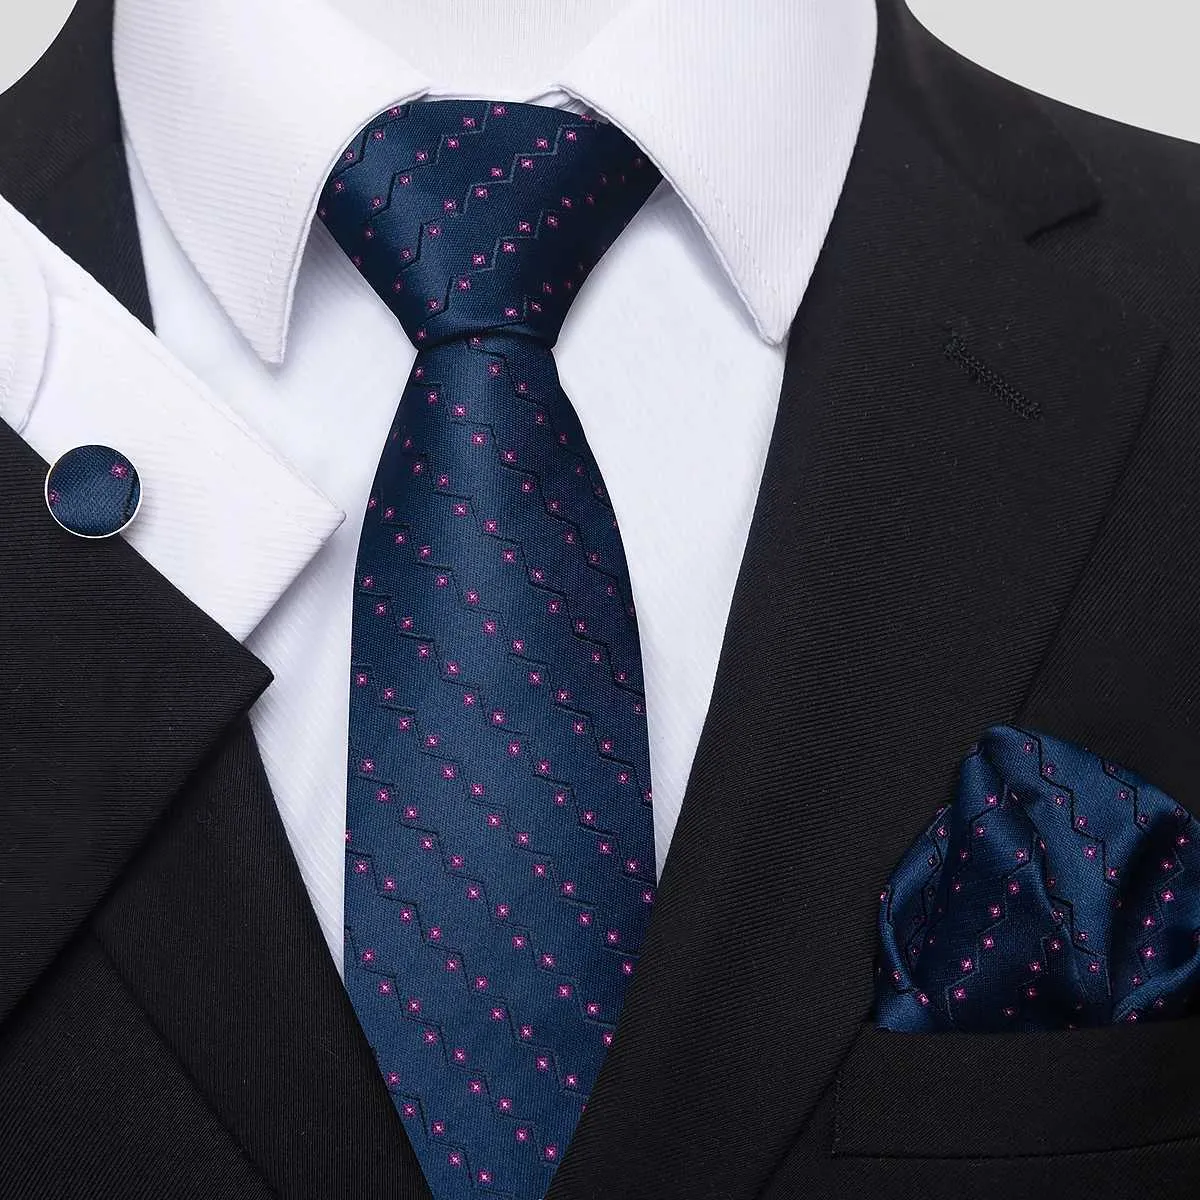 Neck slips set 100% siden slips handduk pocket rutor manschettklänning för män slips blå klädtillbehör passar bröllop fest kontor